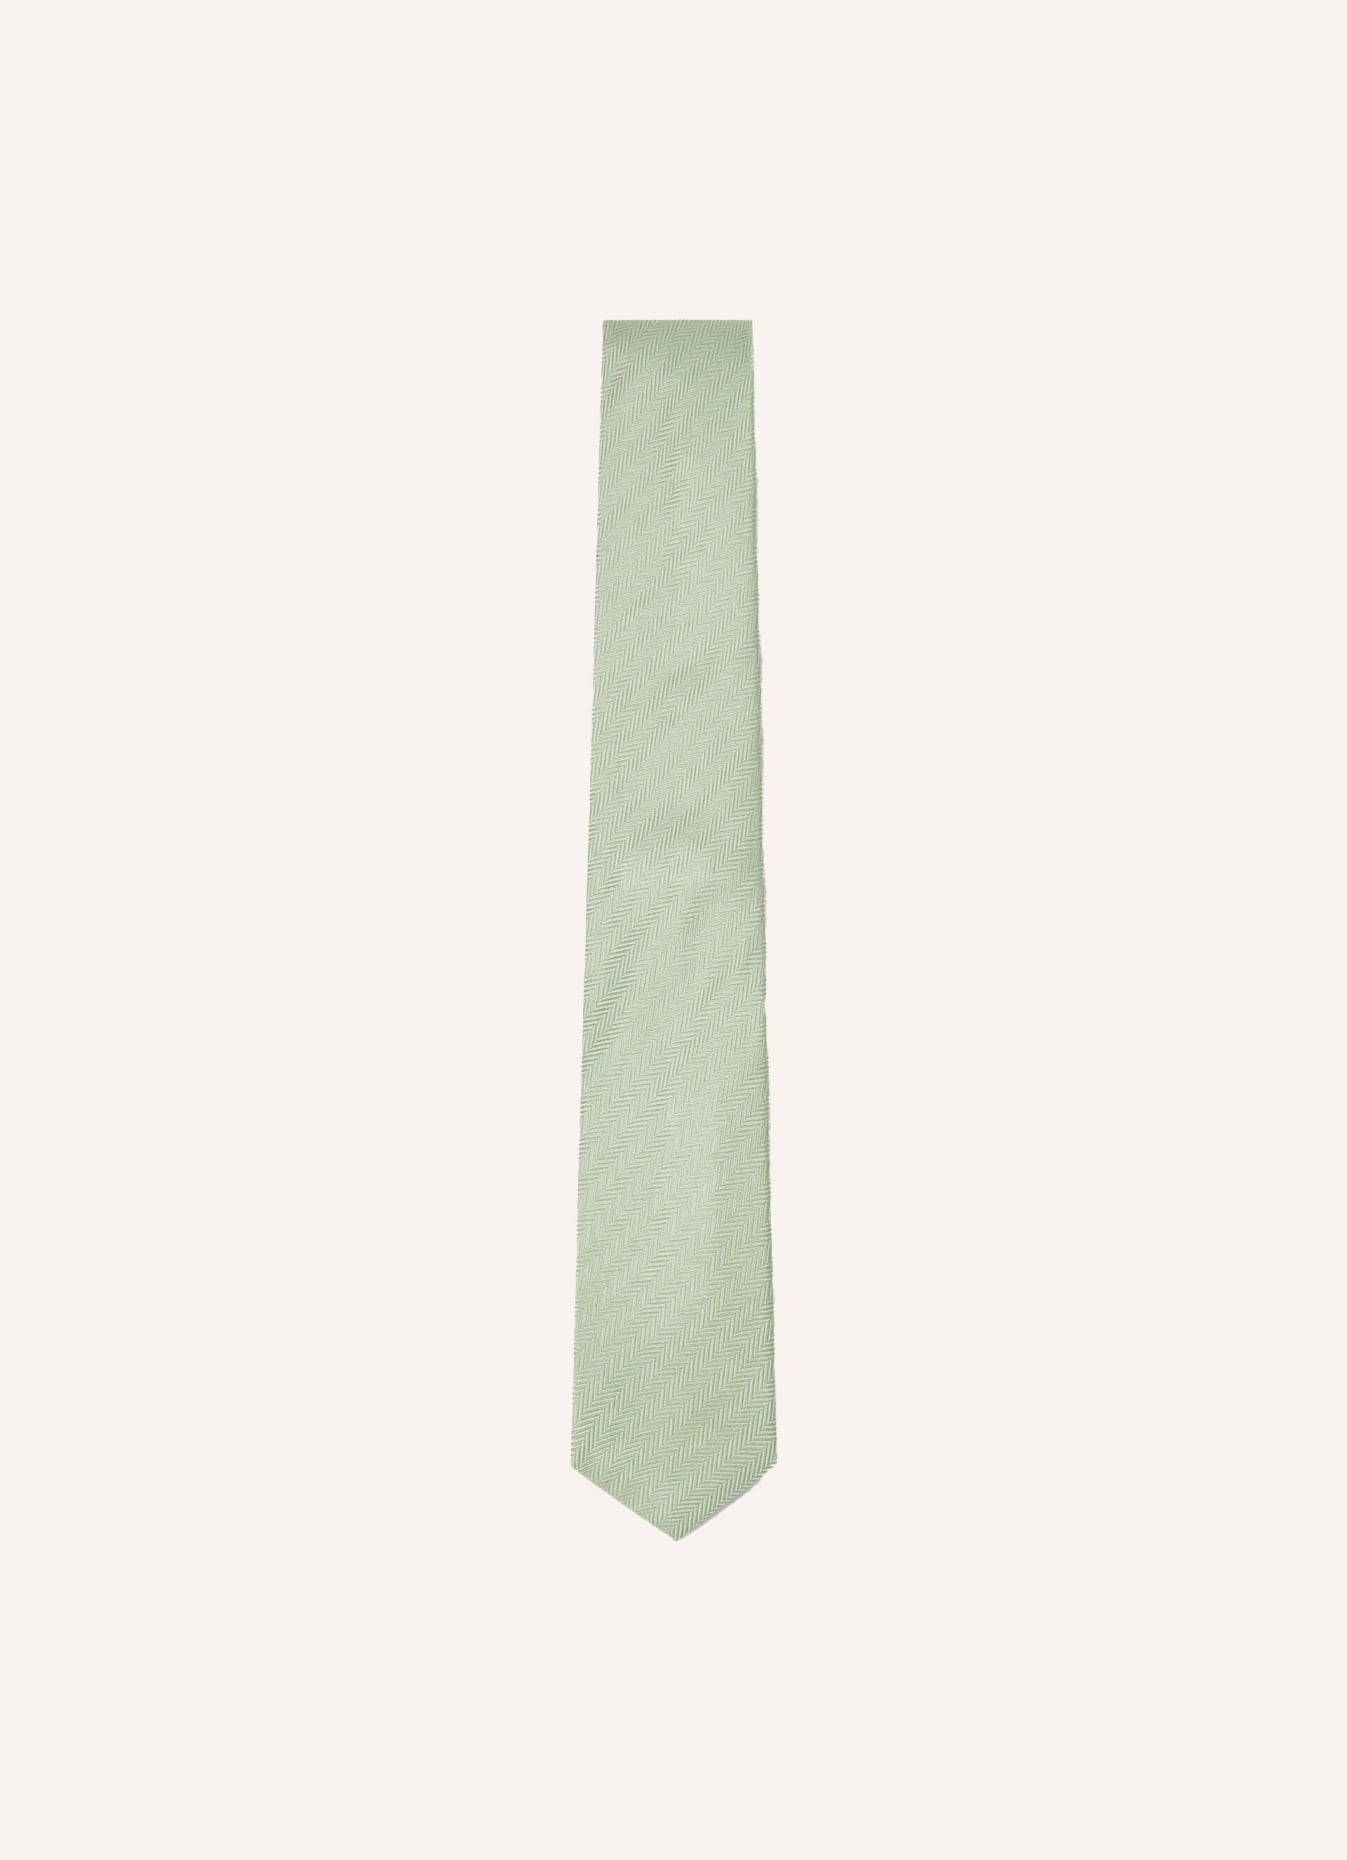 HACKETT LONDON Krawatte MELANGE HERRINGBONE, Farbe: GRÜN (Bild 1)